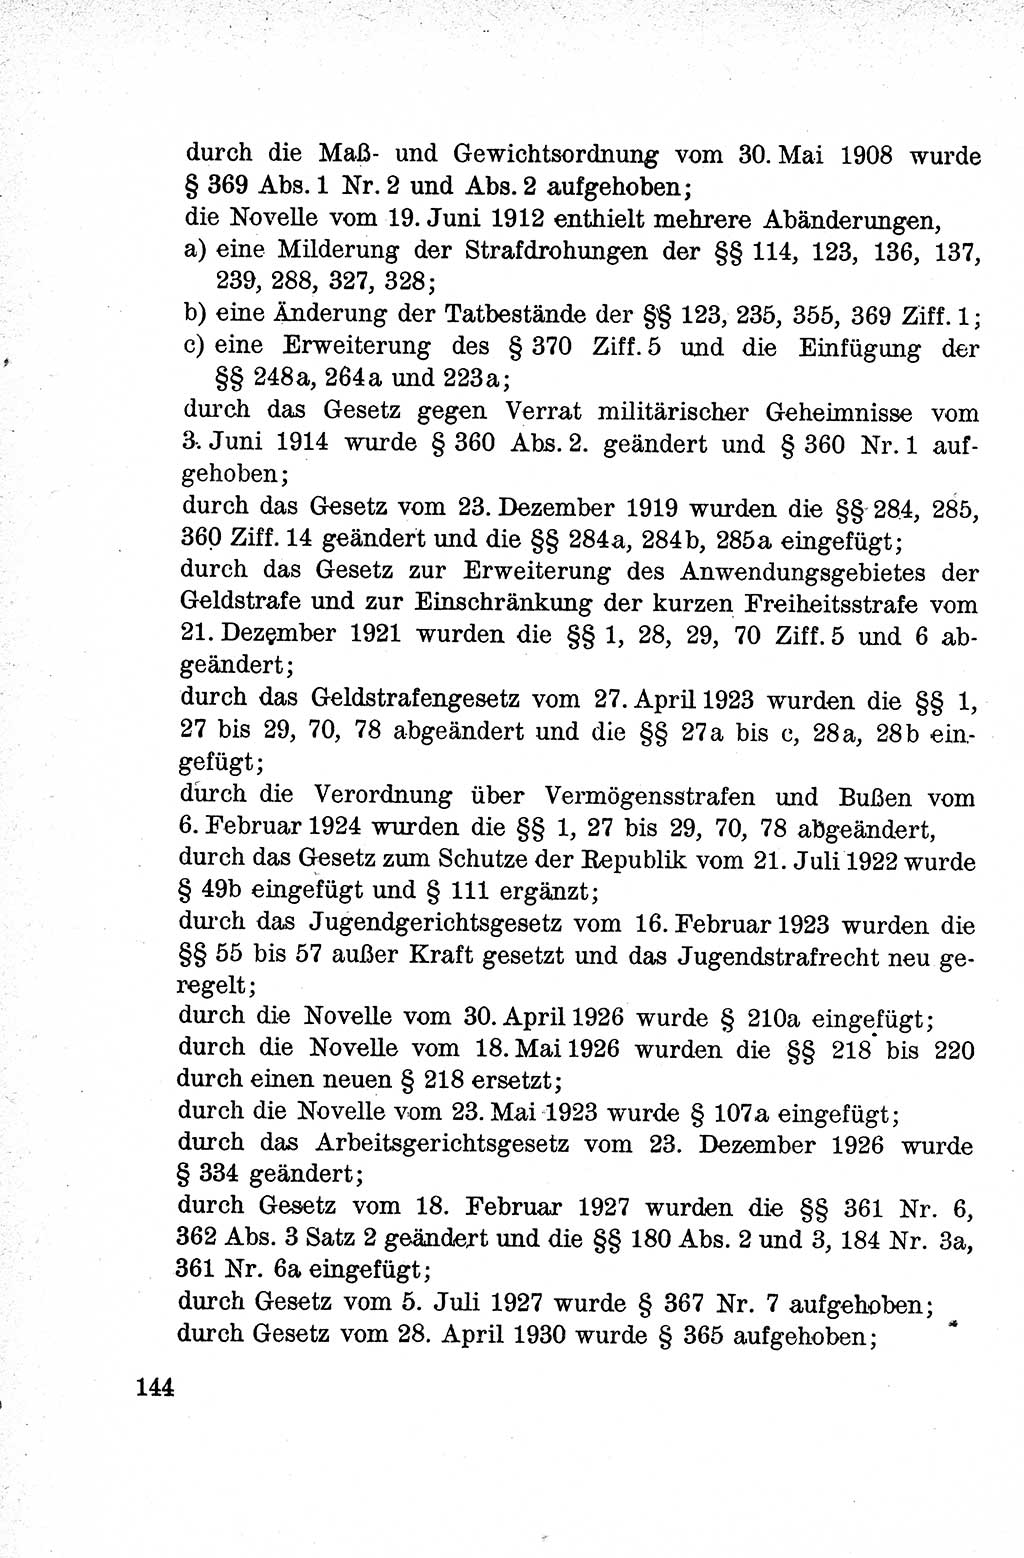 Lehrbuch des Strafrechts der Deutschen Demokratischen Republik (DDR), Allgemeiner Teil 1959, Seite 144 (Lb. Strafr. DDR AT 1959, S. 144)